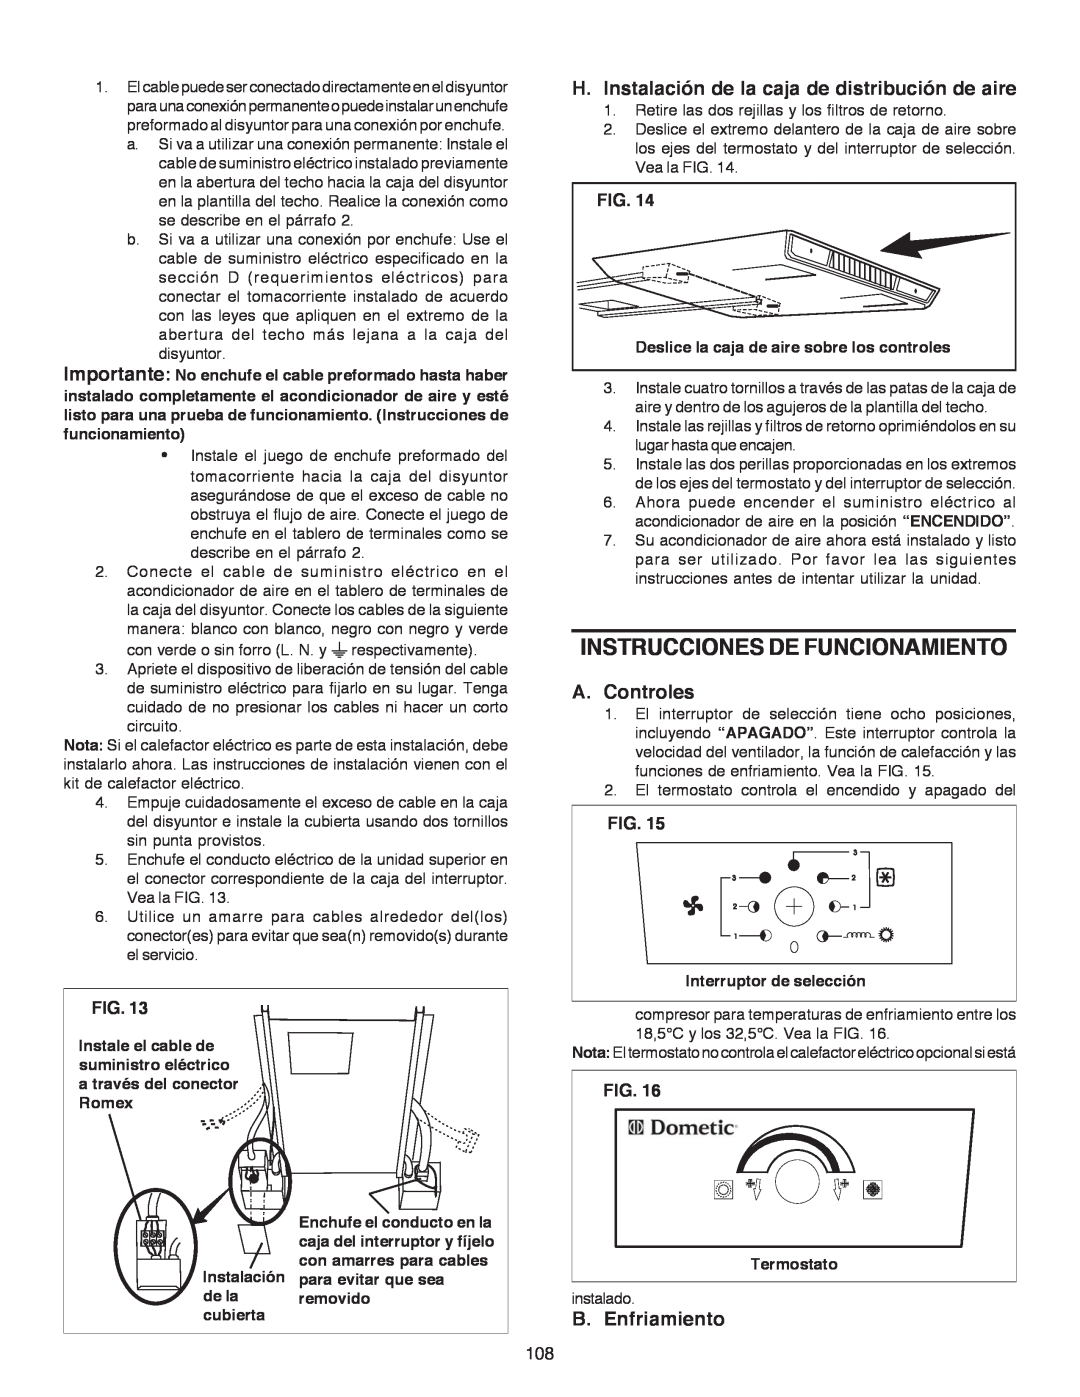 Dometic B3200 manual Instrucciones De Funcionamiento, H.Instalación de la caja de distribución de aire, A.Controles, Fig 